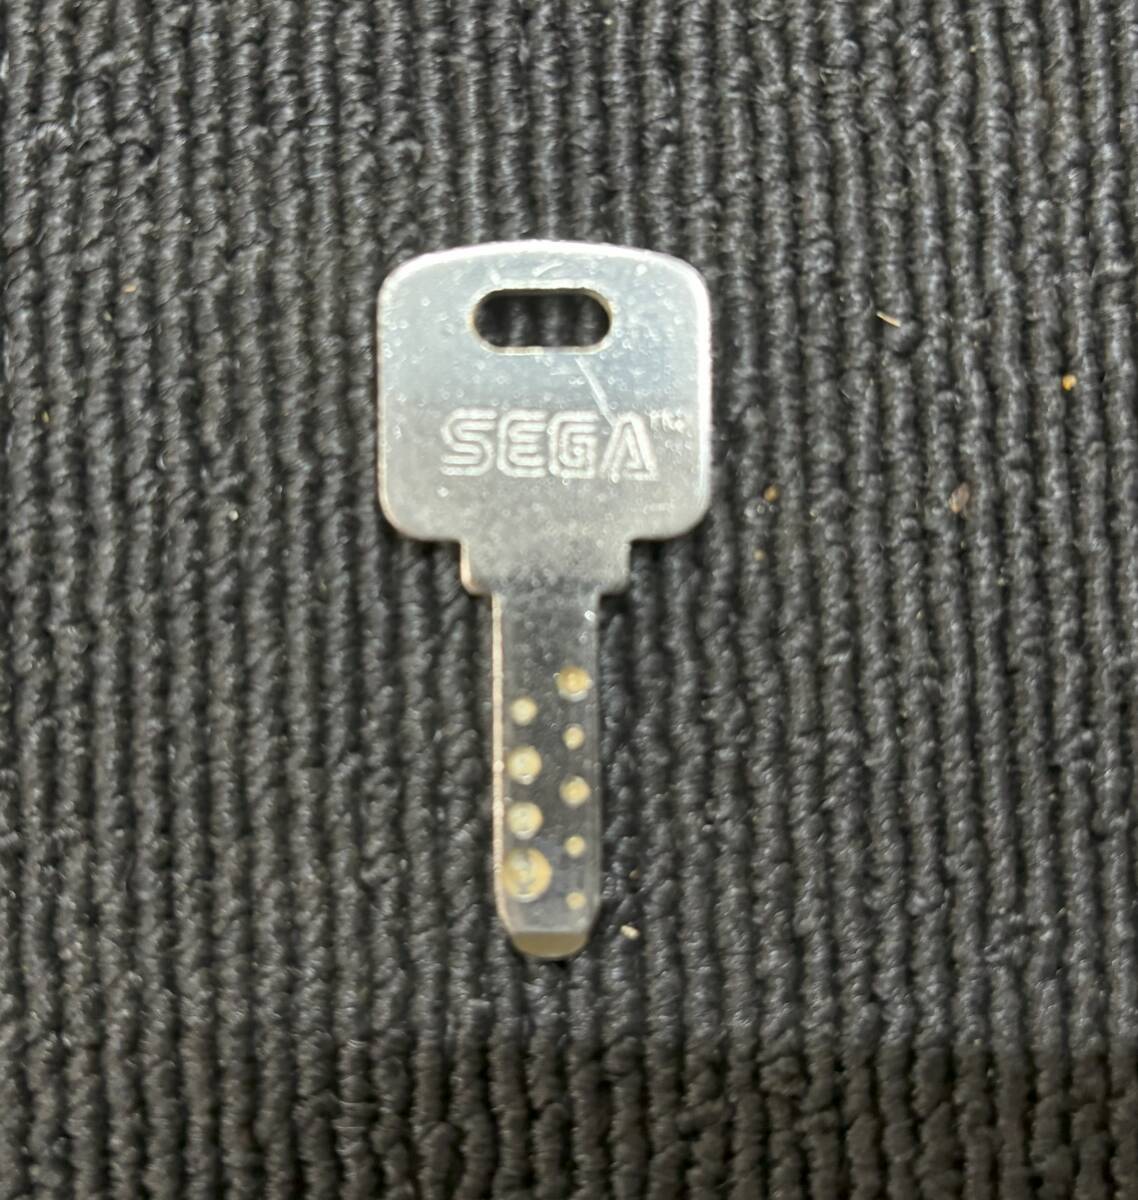  Sega |SEGA key N5575 key * tang set 